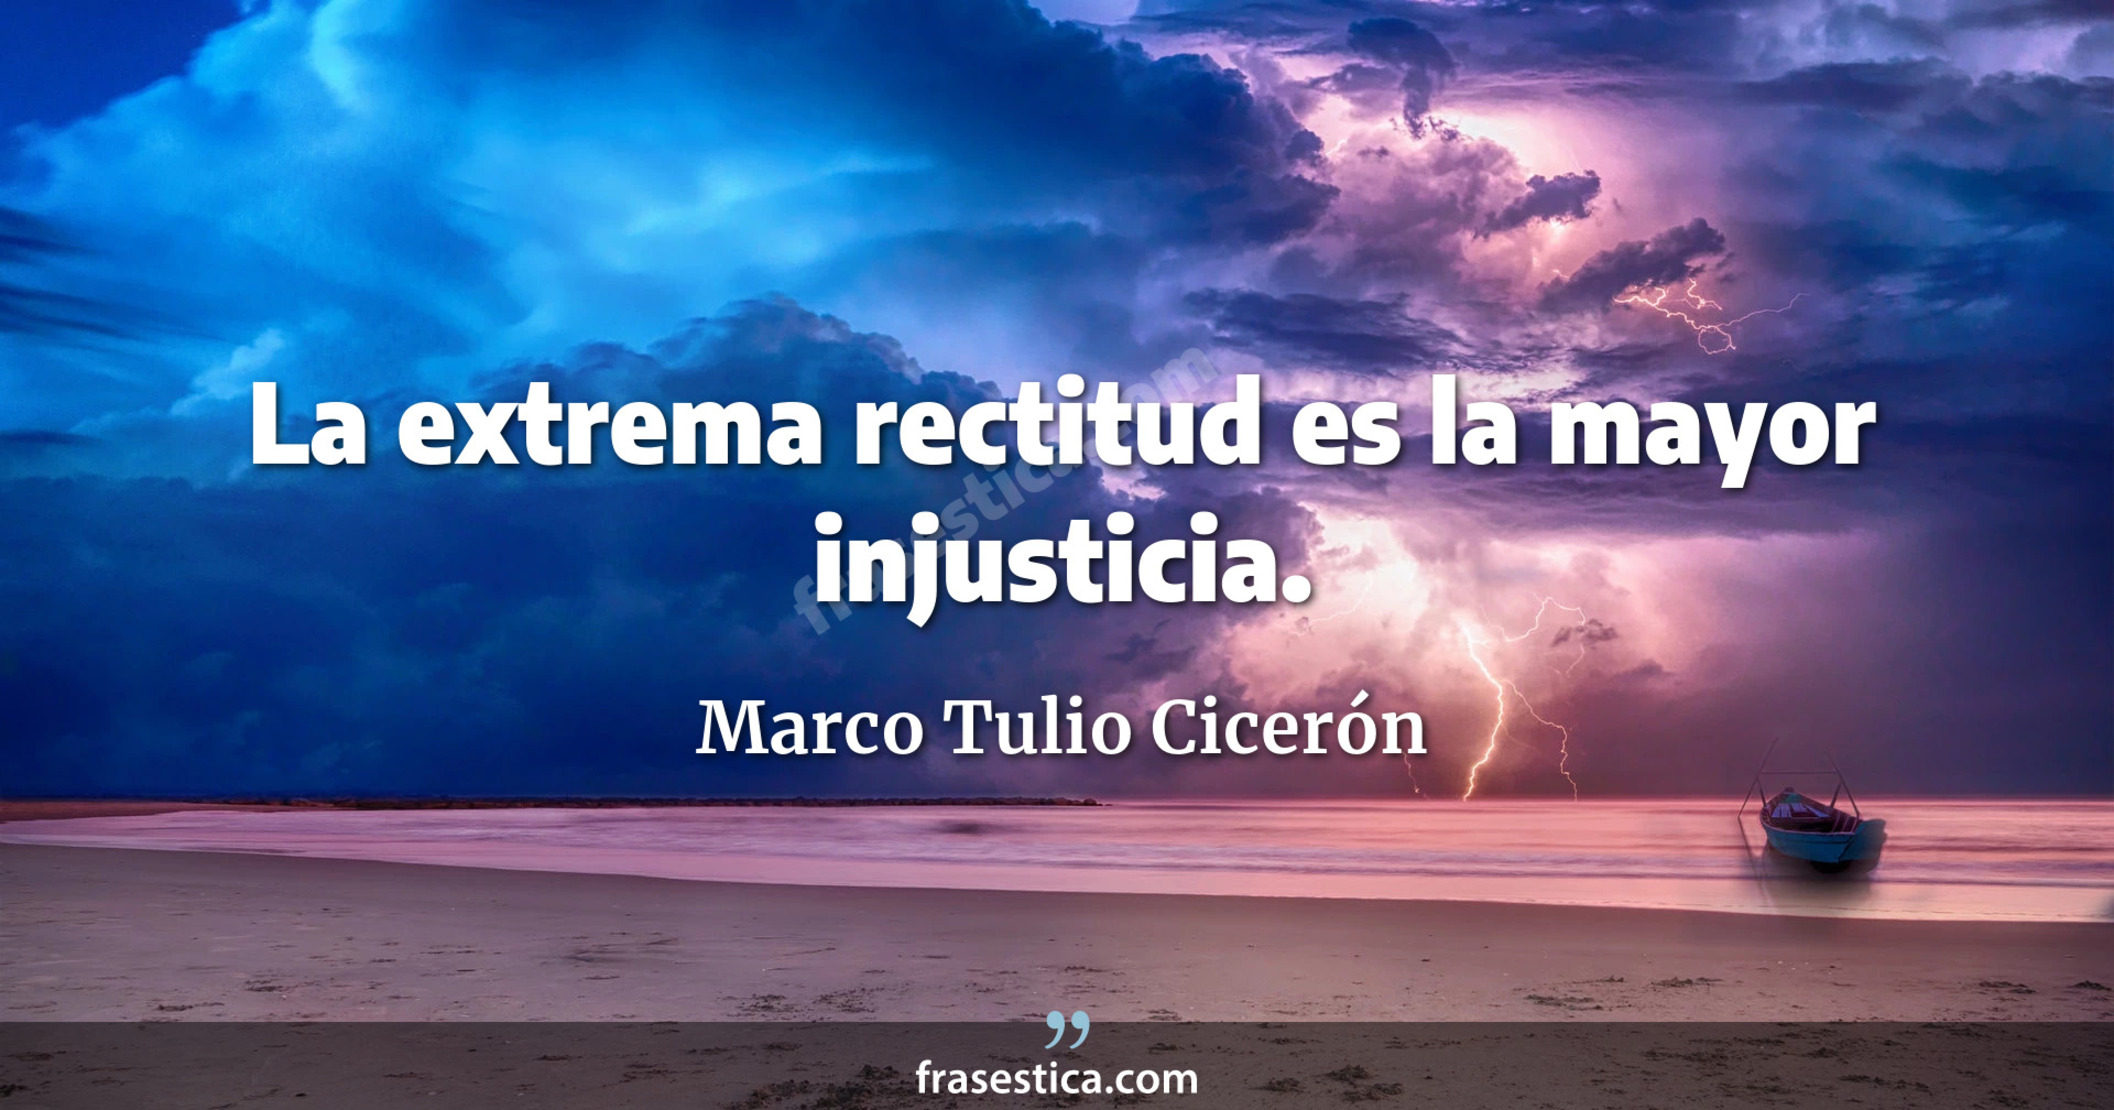 La extrema rectitud es la mayor injusticia. - Marco Tulio Cicerón